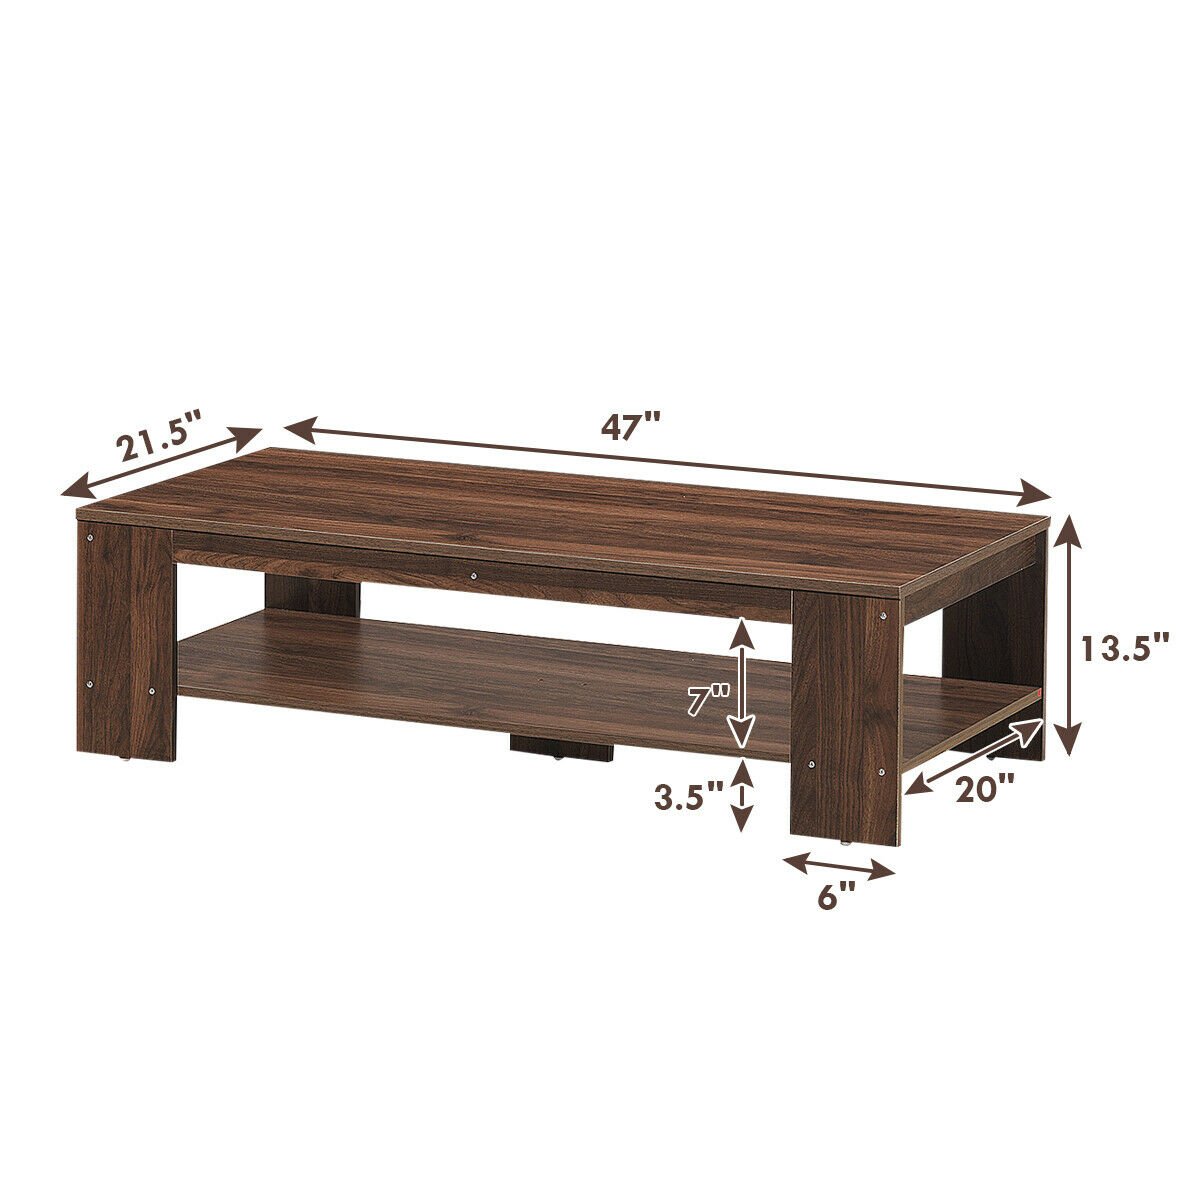 47 Inch 2-Tier Rectangular Coffee Table with Storage Shelf, Walnut - Gallery Canada